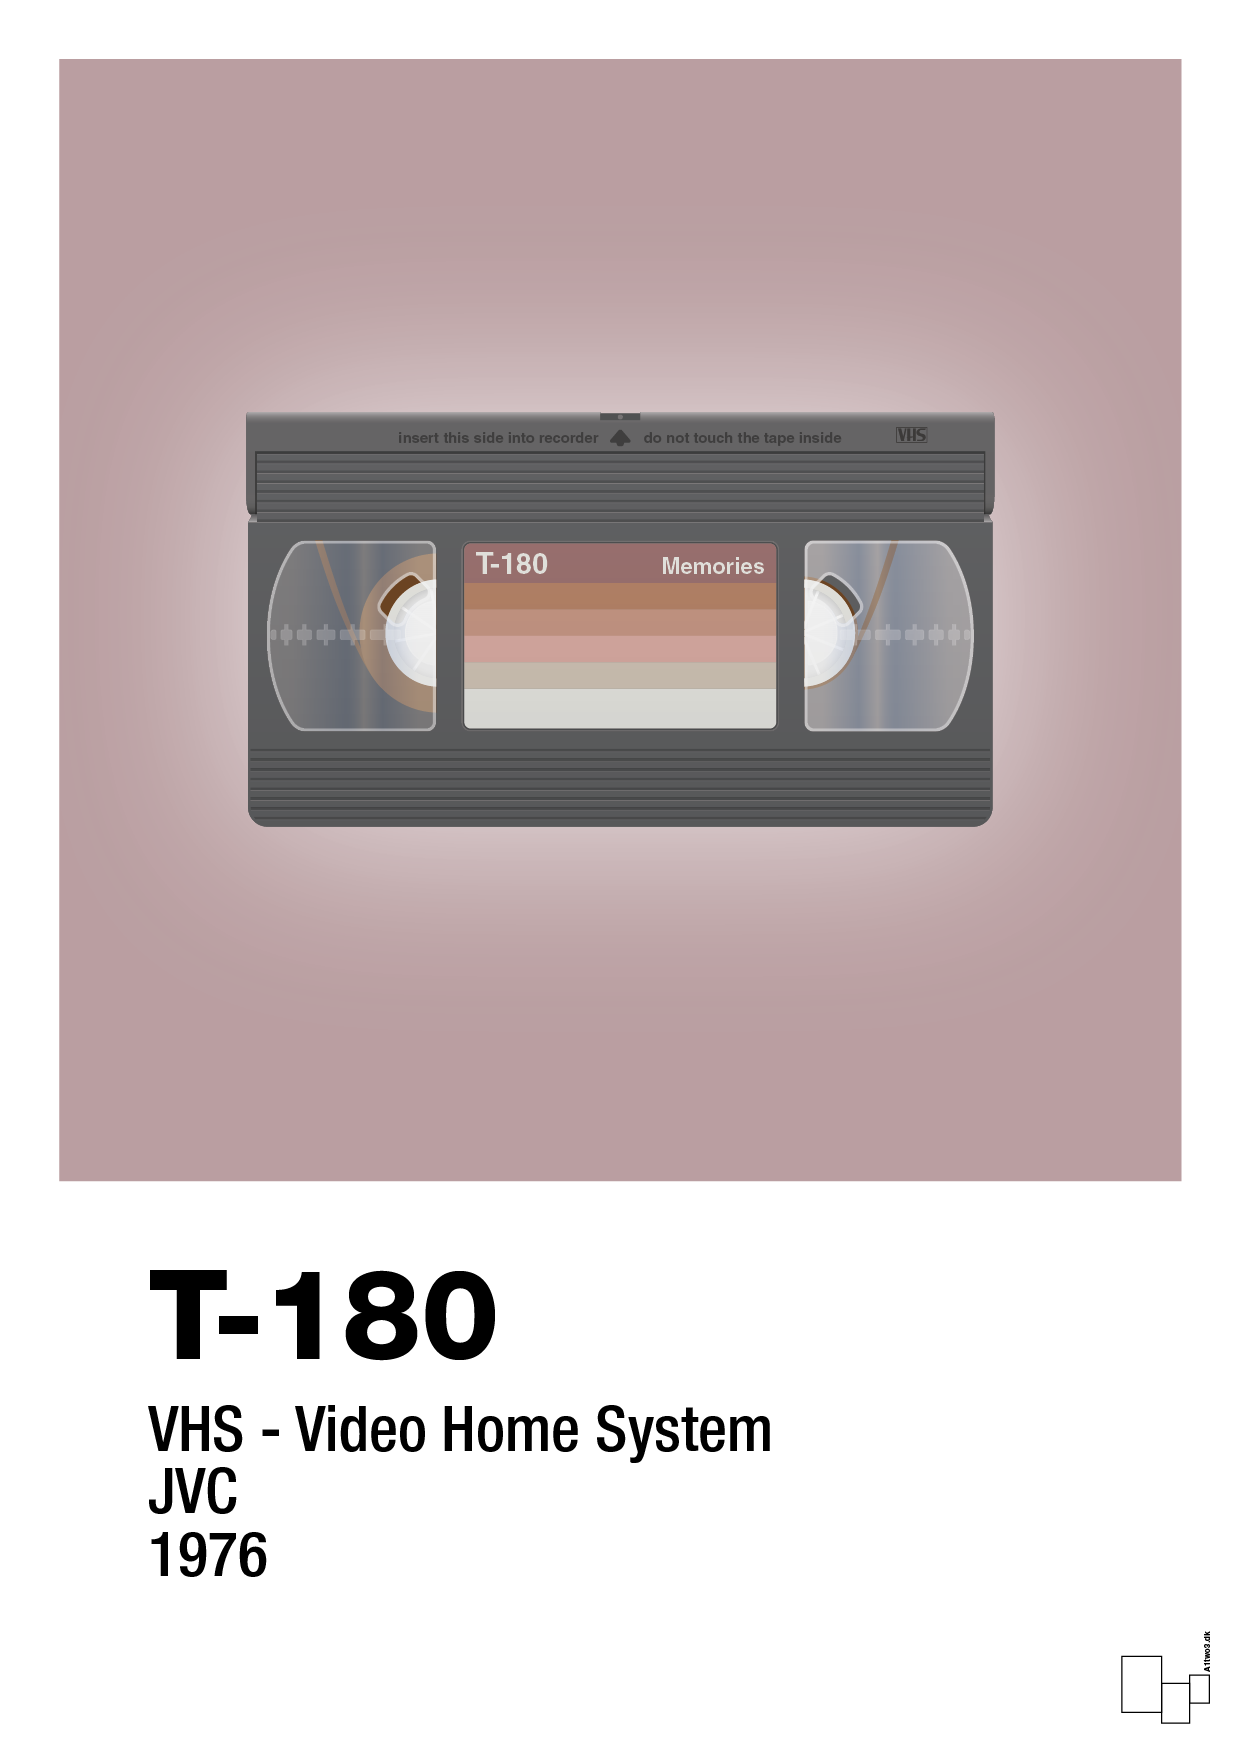 videobånd t-180 - Plakat med Grafik i Light Rose